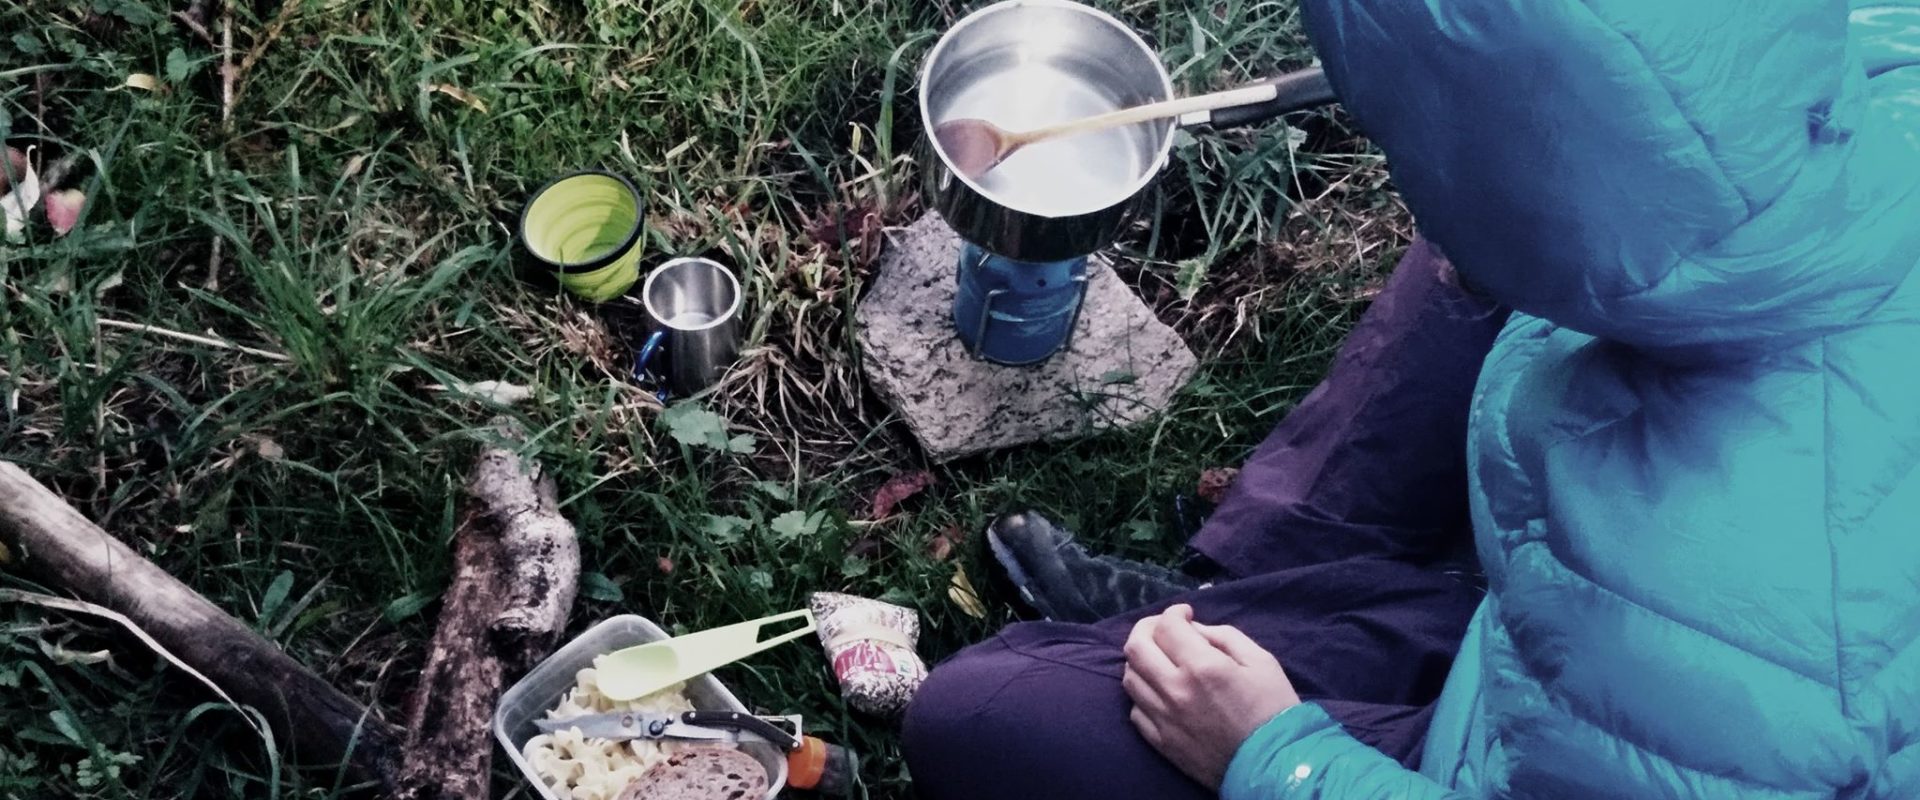 L'alimentation en Trekking ou comment bien se nourrir en randonnée